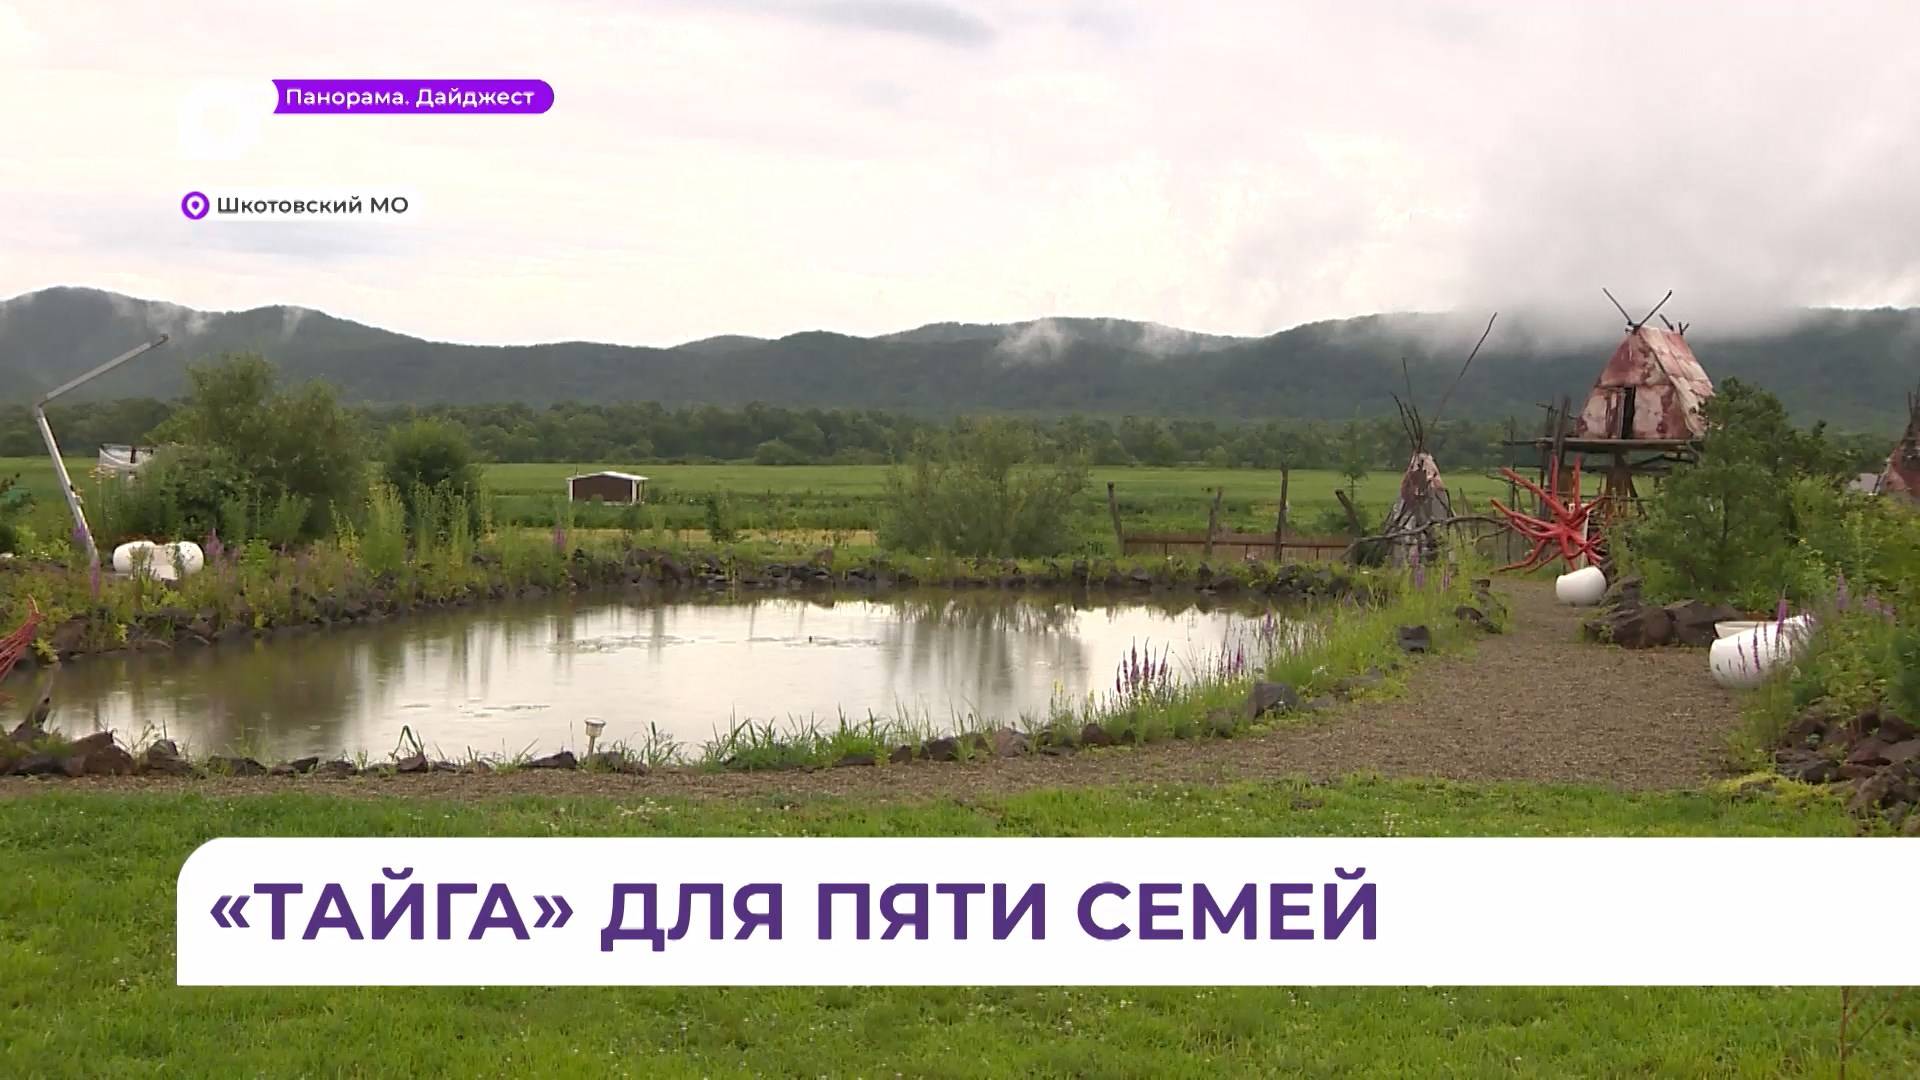 Кооператив «Тайга» осваивает землю в Шкотовском округе по программе «Дальневосточный гектар»